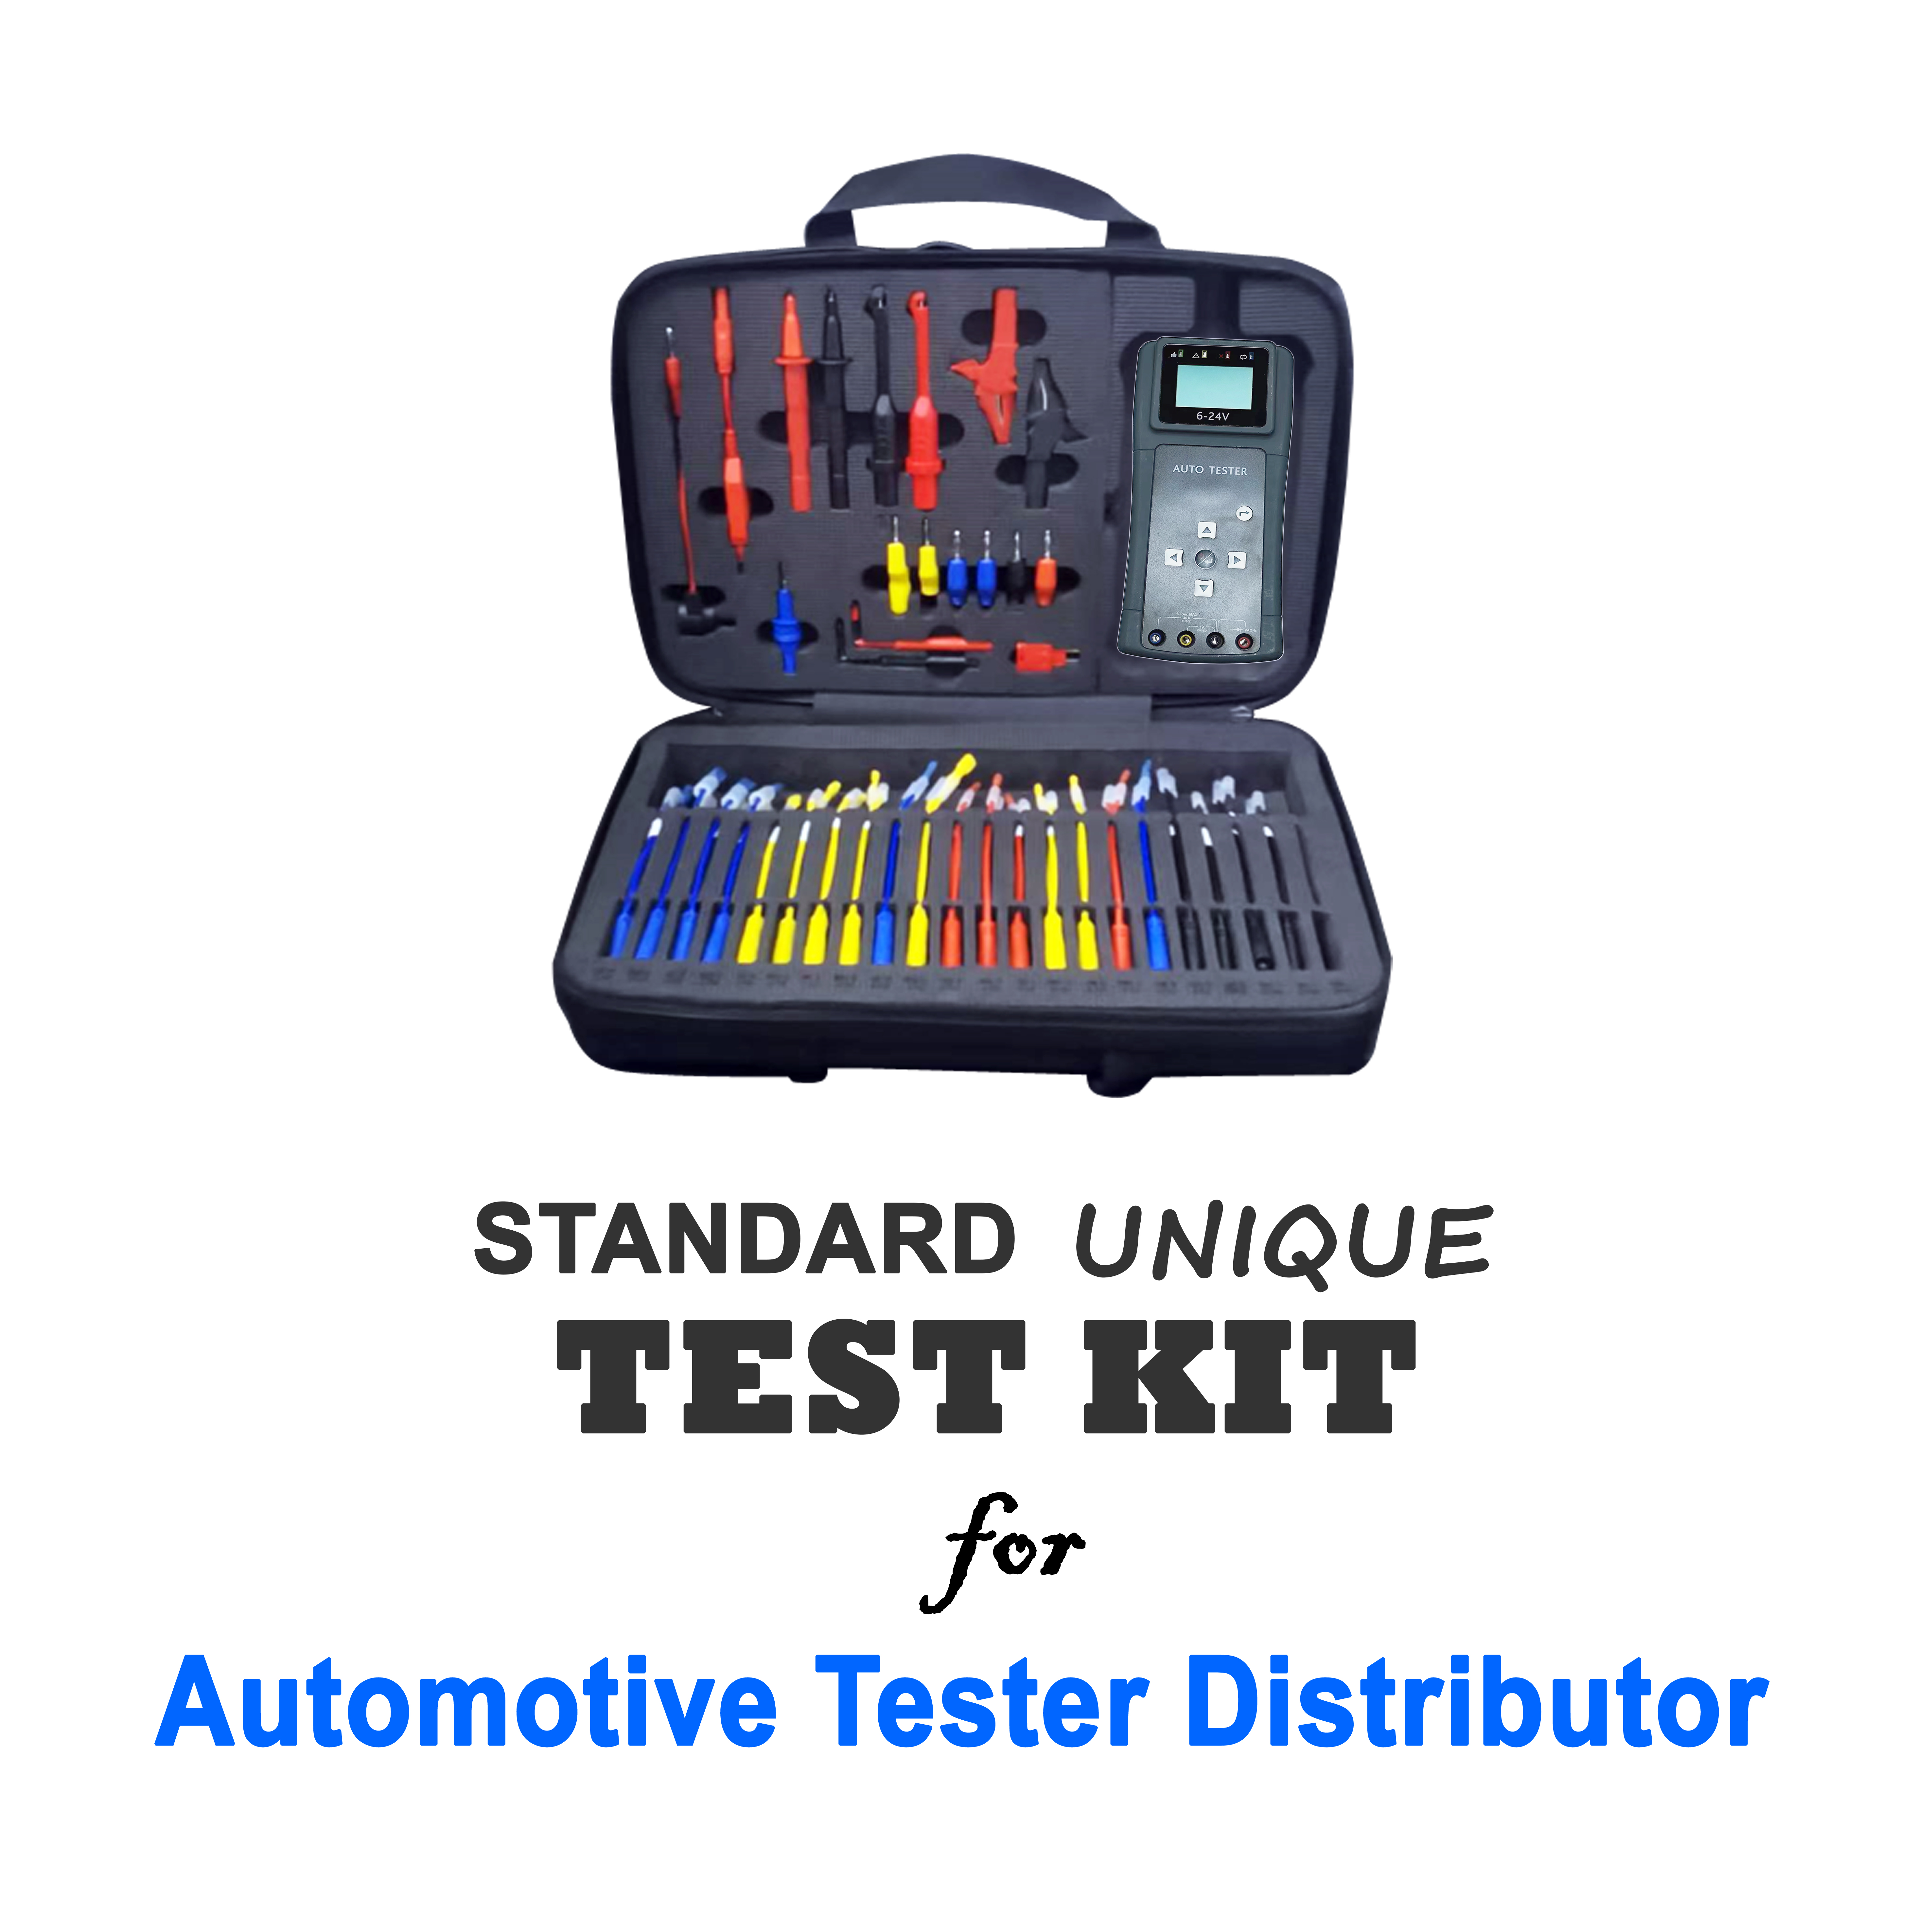 Standard Unique Test Kits